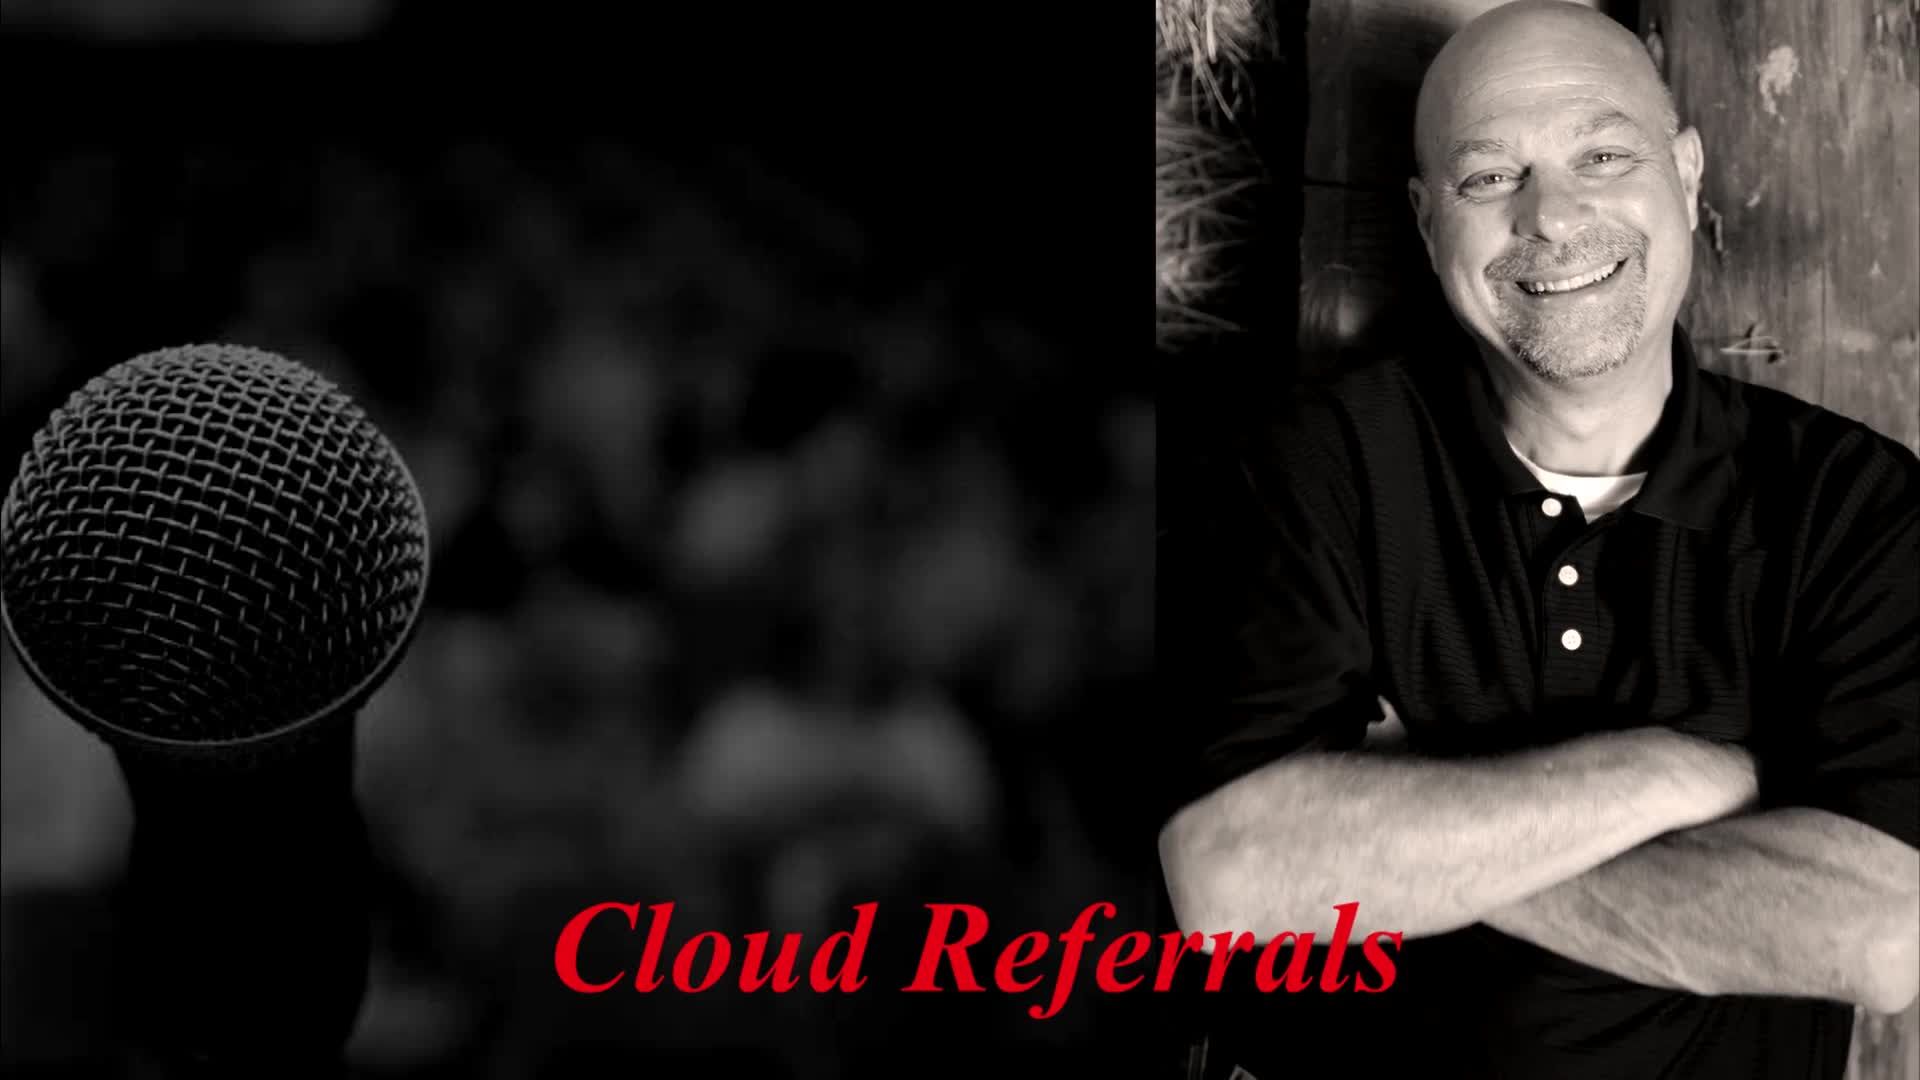 Cloud referrals